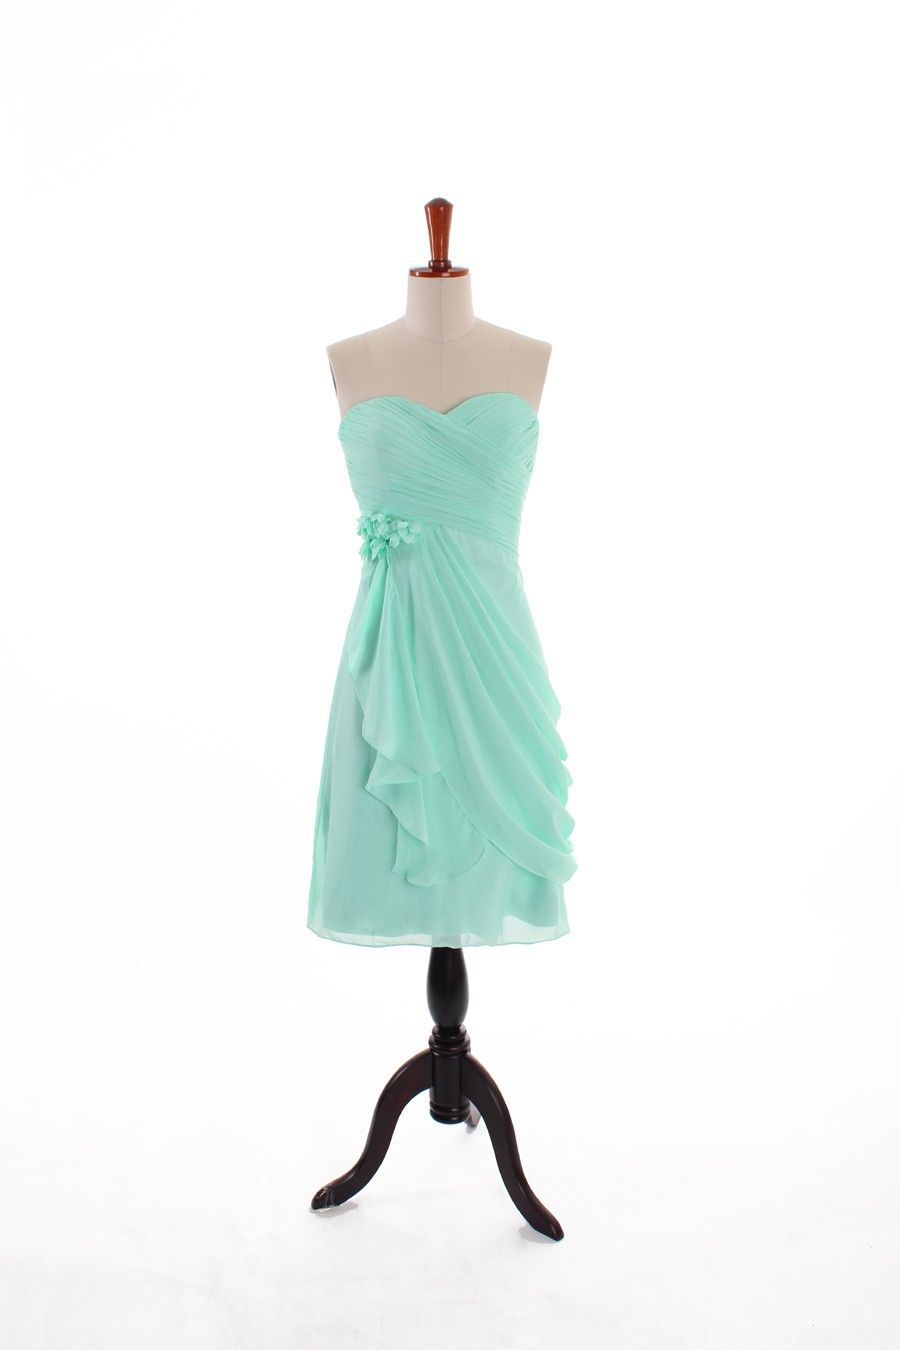 Sweetheart chiffon bridesmaid dress with natural waist $156.00